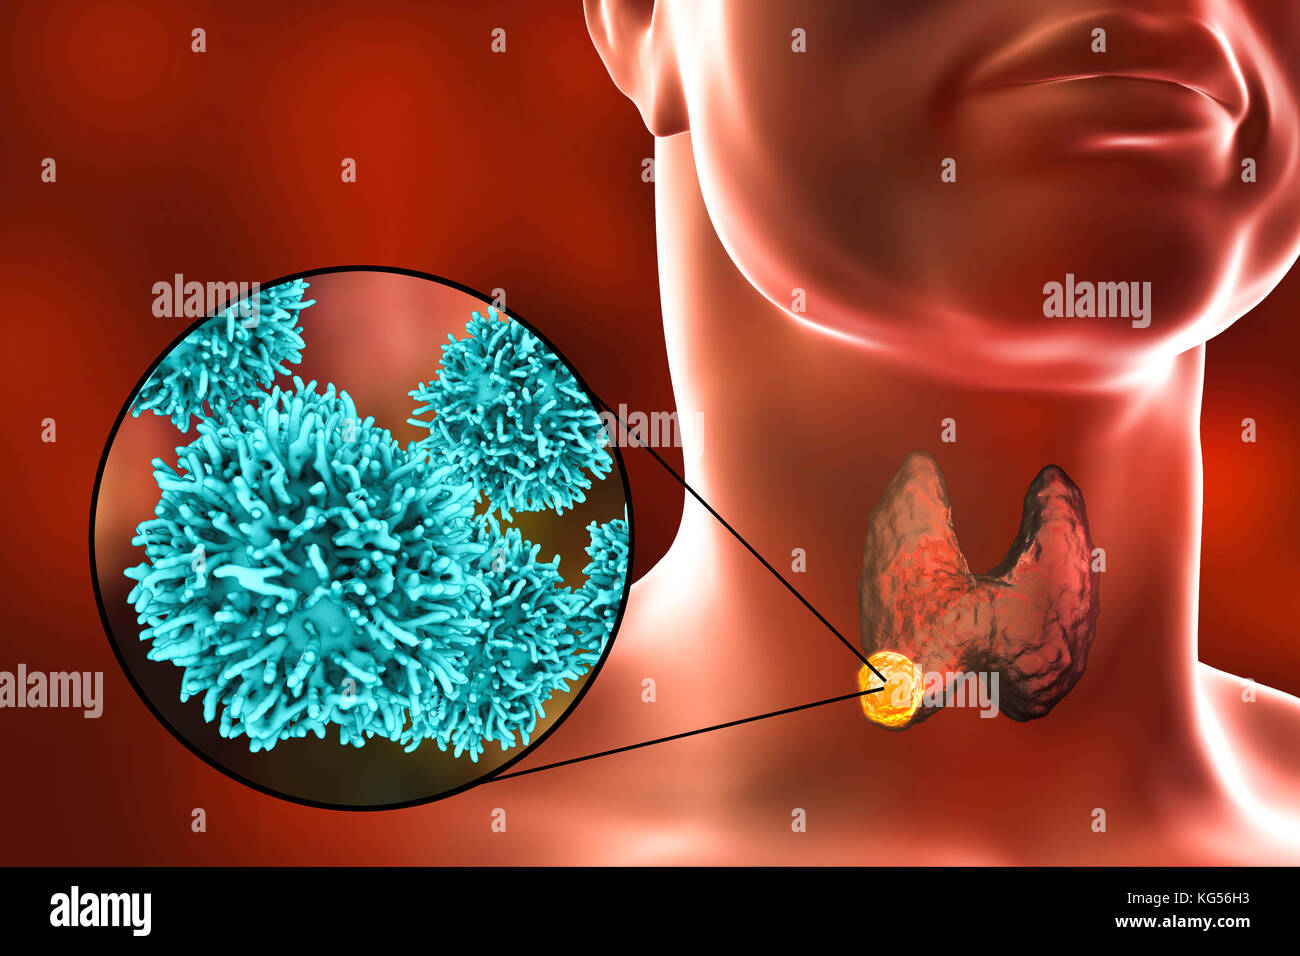 Les droits de l'glande thyroïde montrant une tumeur et vue rapprochée de cellules de cancer de la thyroïde, l'illustration de l'ordinateur. Banque D'Images